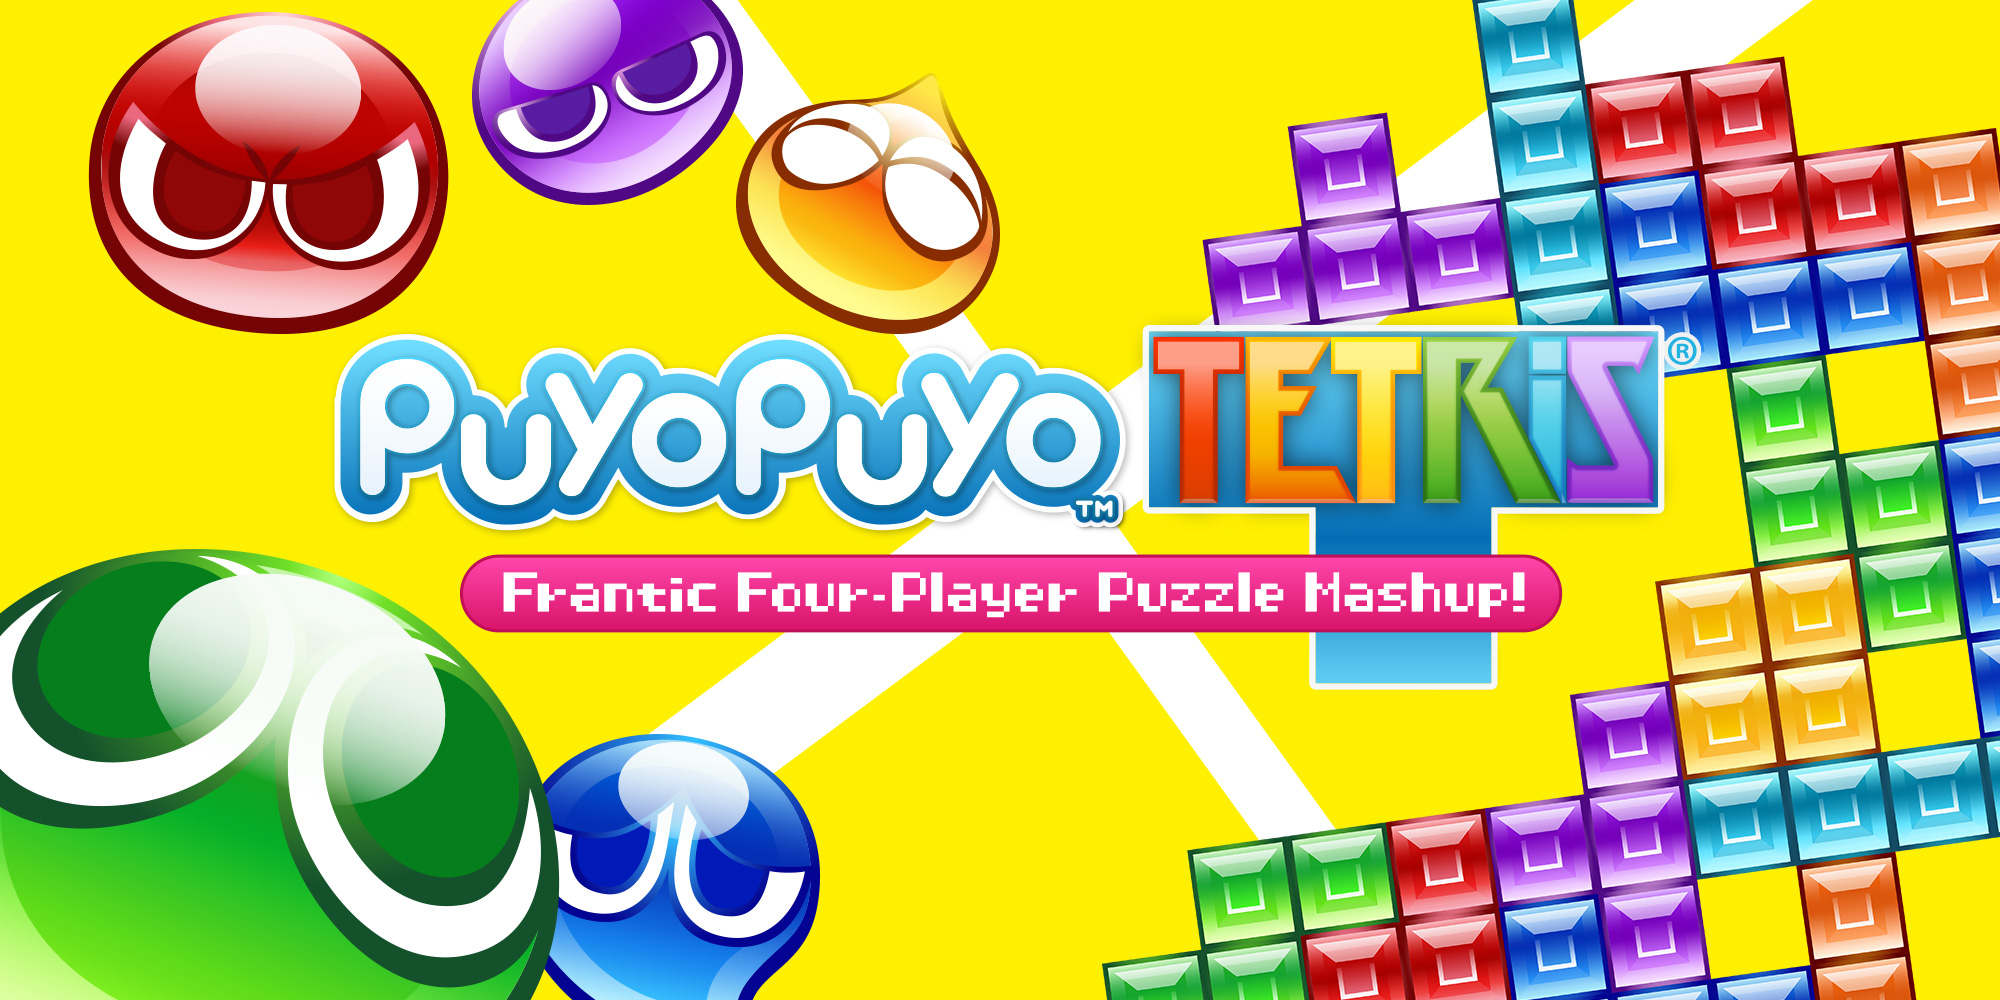 Jogo Puyo Puyo Tetris Sega Nintendo Switch em Promoção é no Bondfaro